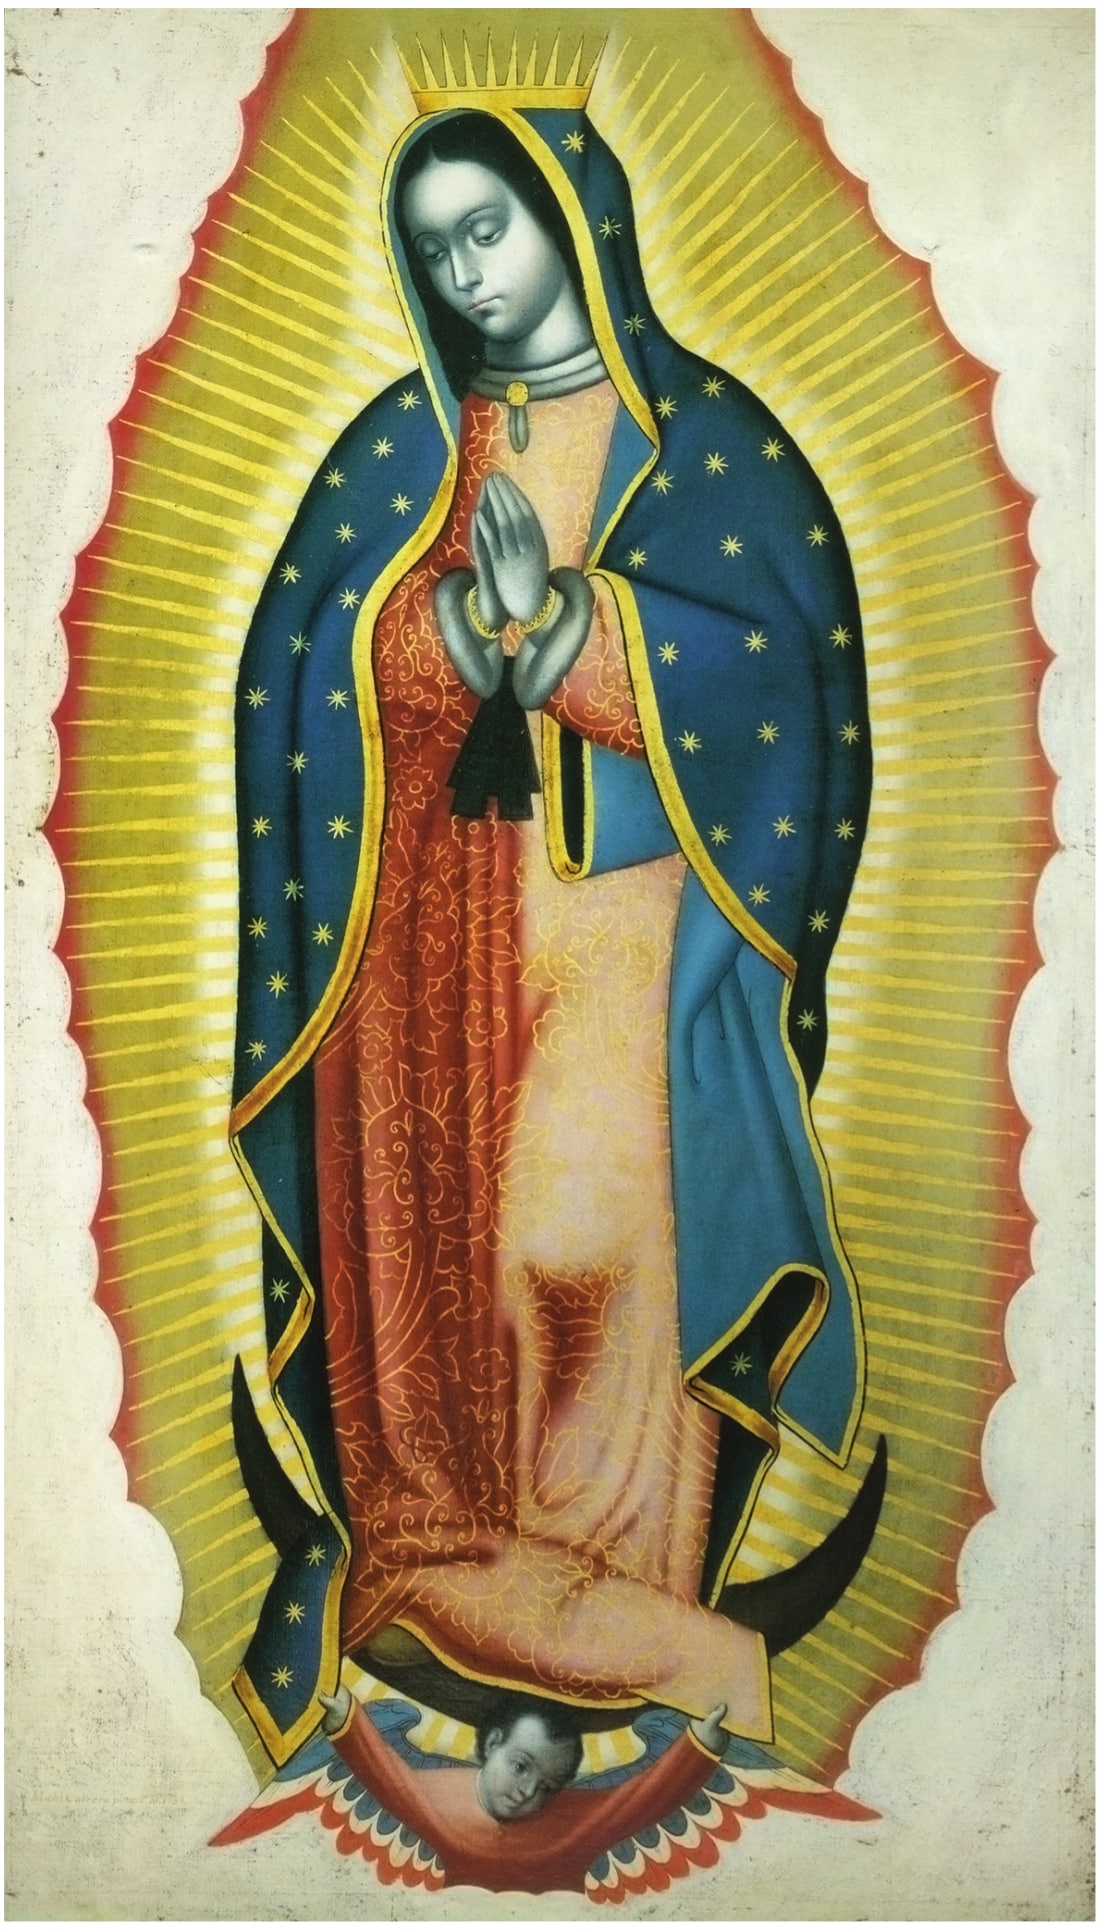 Reproducción de la Virgen de Guadalupe de Miguel Cabrera